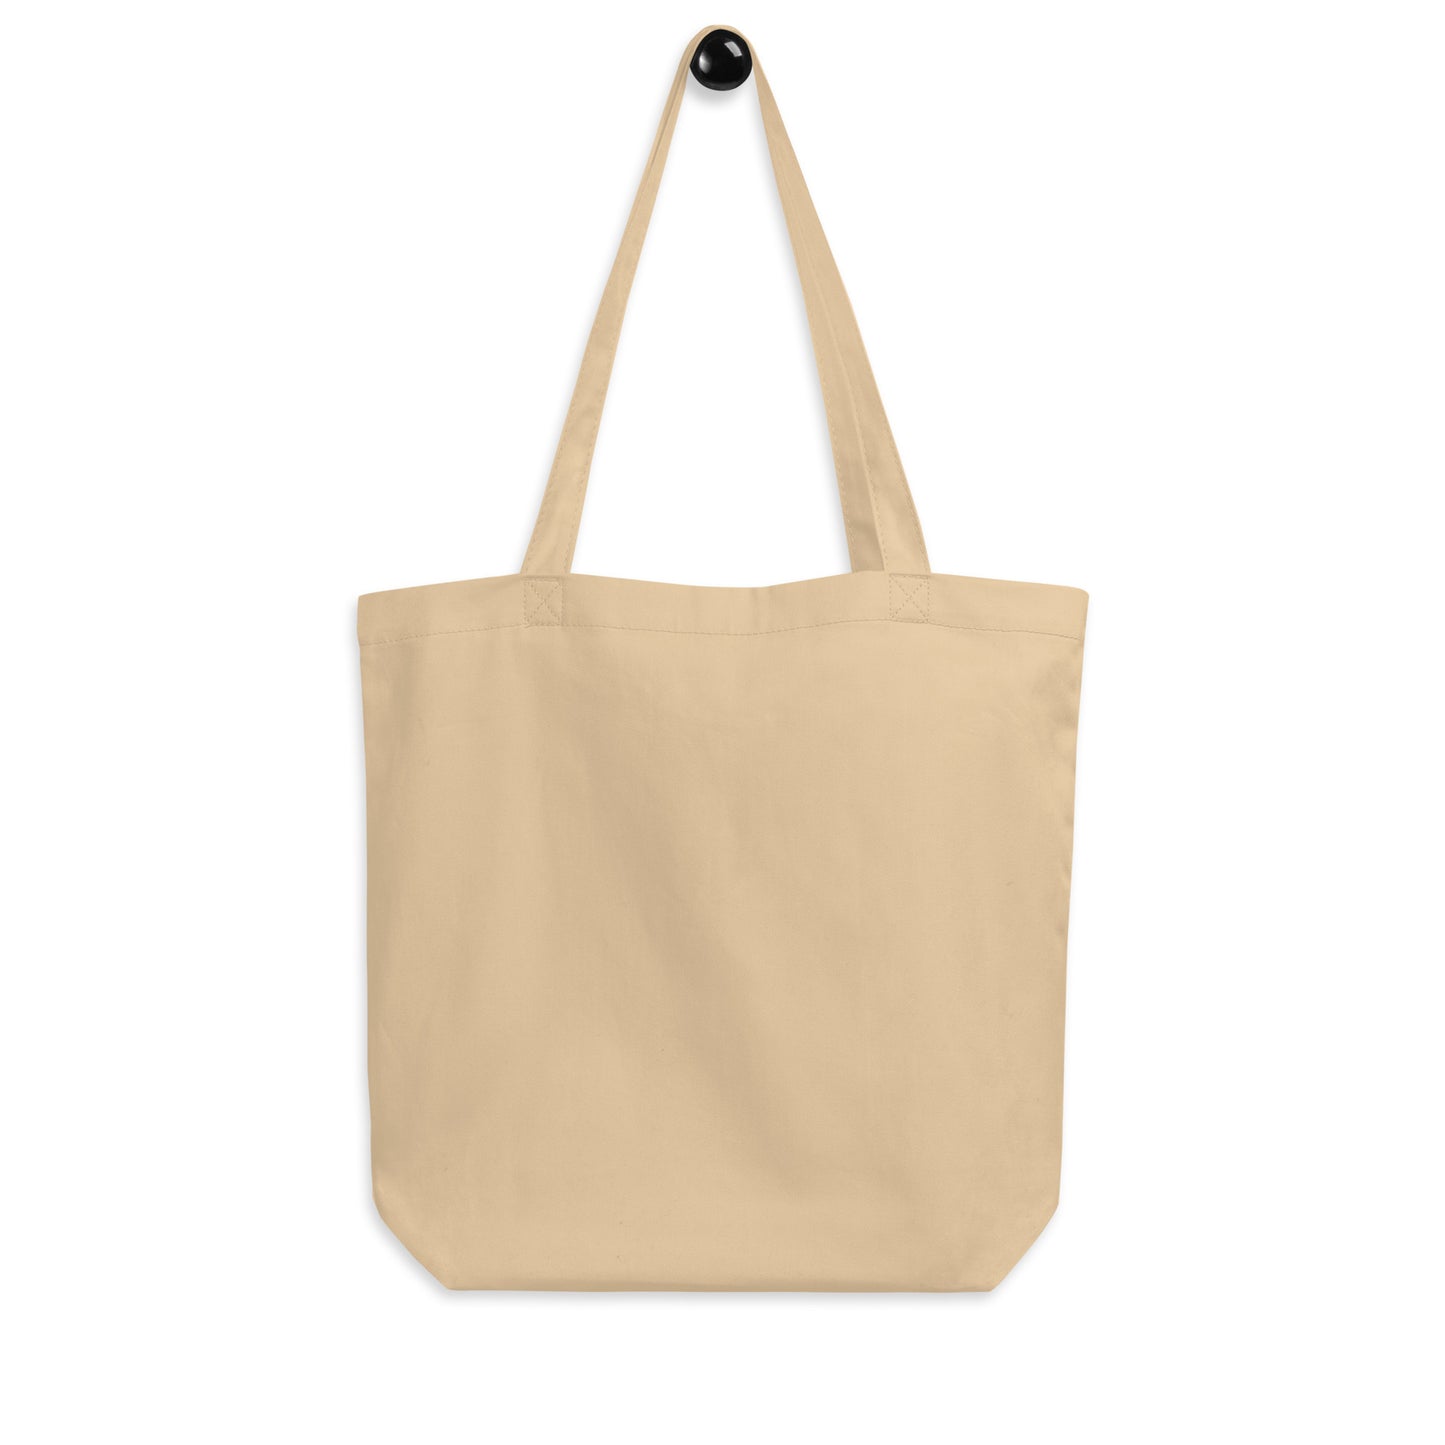 Cool Travel Gift Organic Tote Bag - Viking Blue • YOW Ottawa • YHM Designs - Image 05